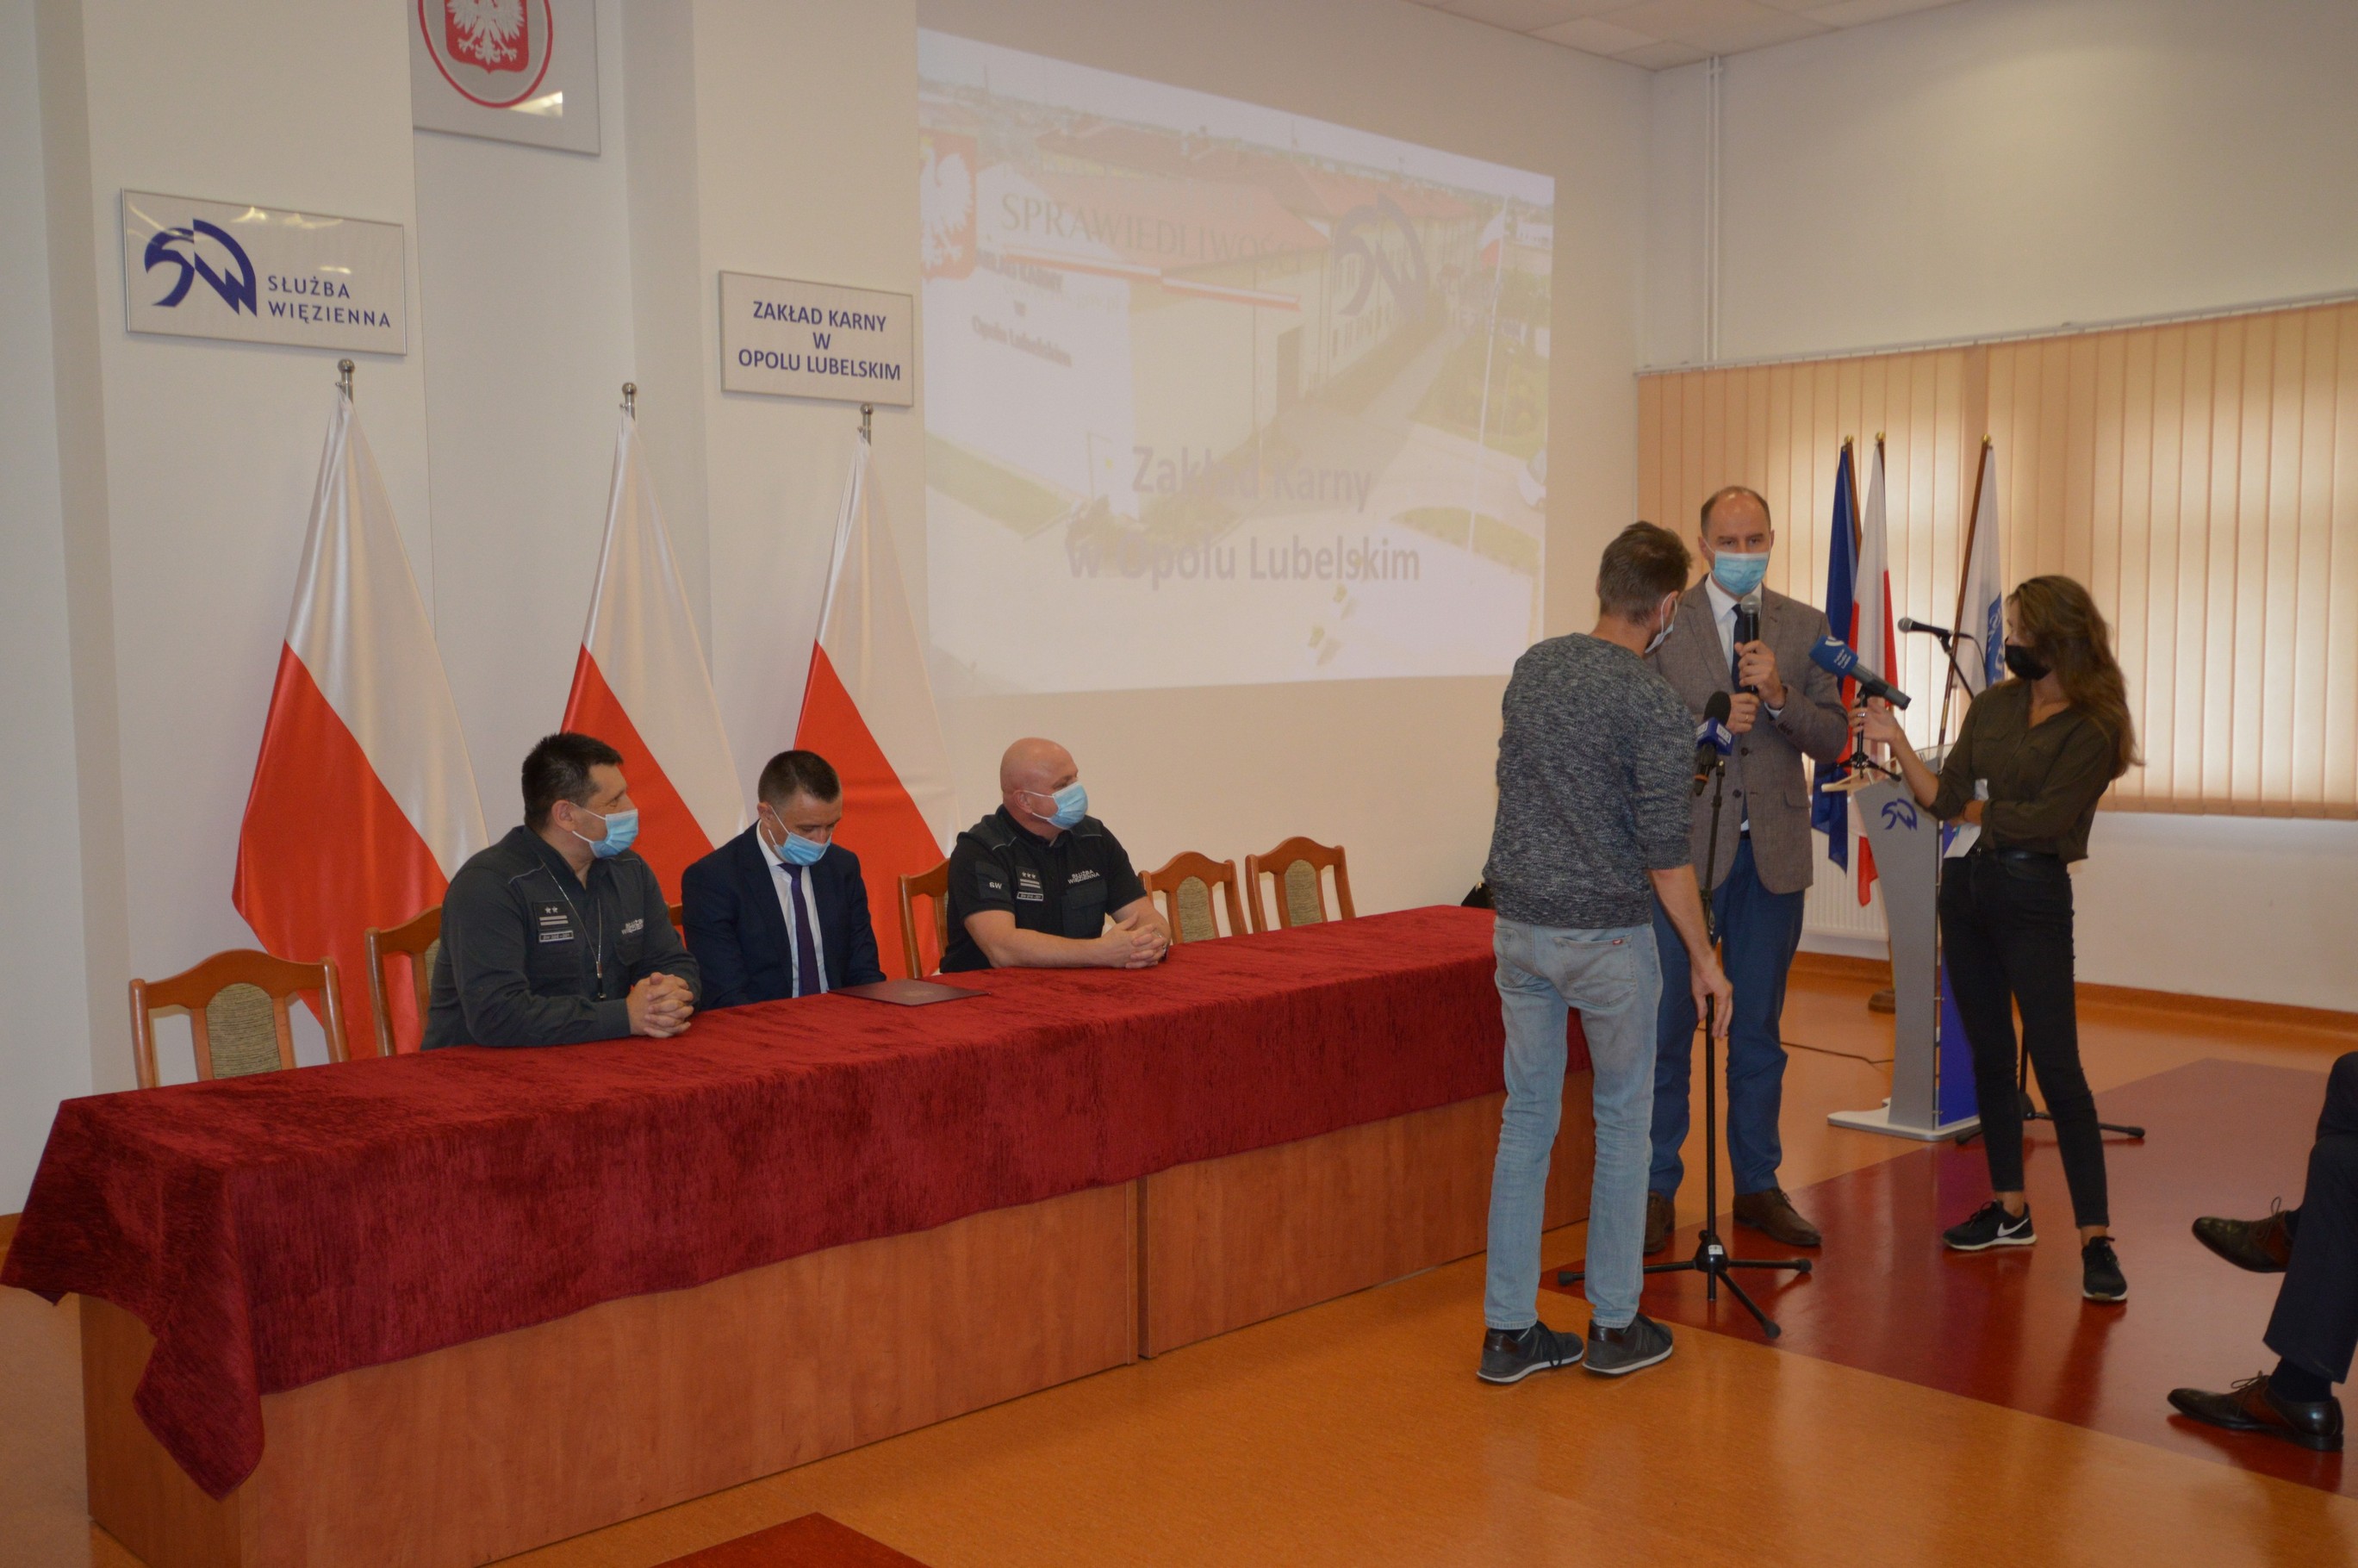 Zakład Karny w Opolu Lubelskim otrzymał specjalistyczny sprzęt (zdjęcia)